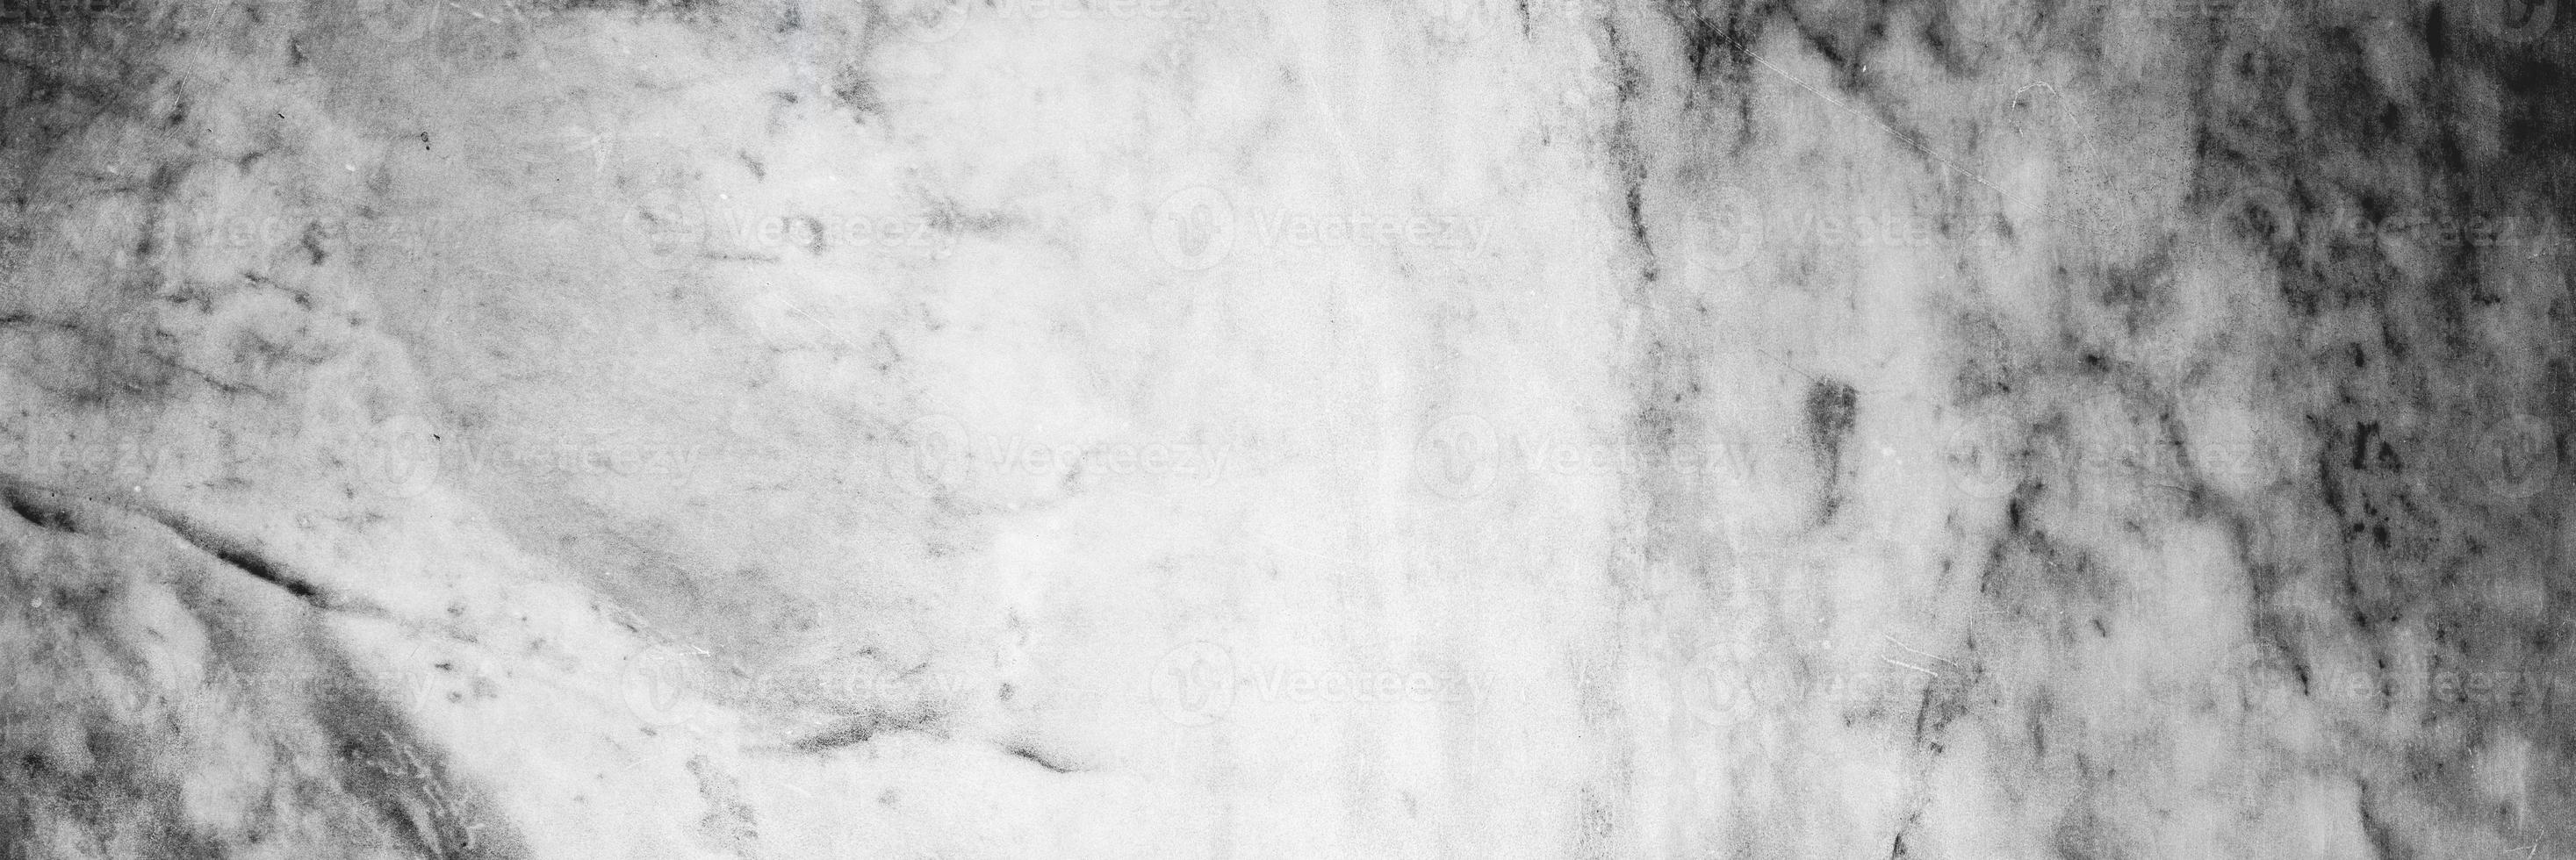 marmo bianco e grigio per lo sfondo o la trama foto